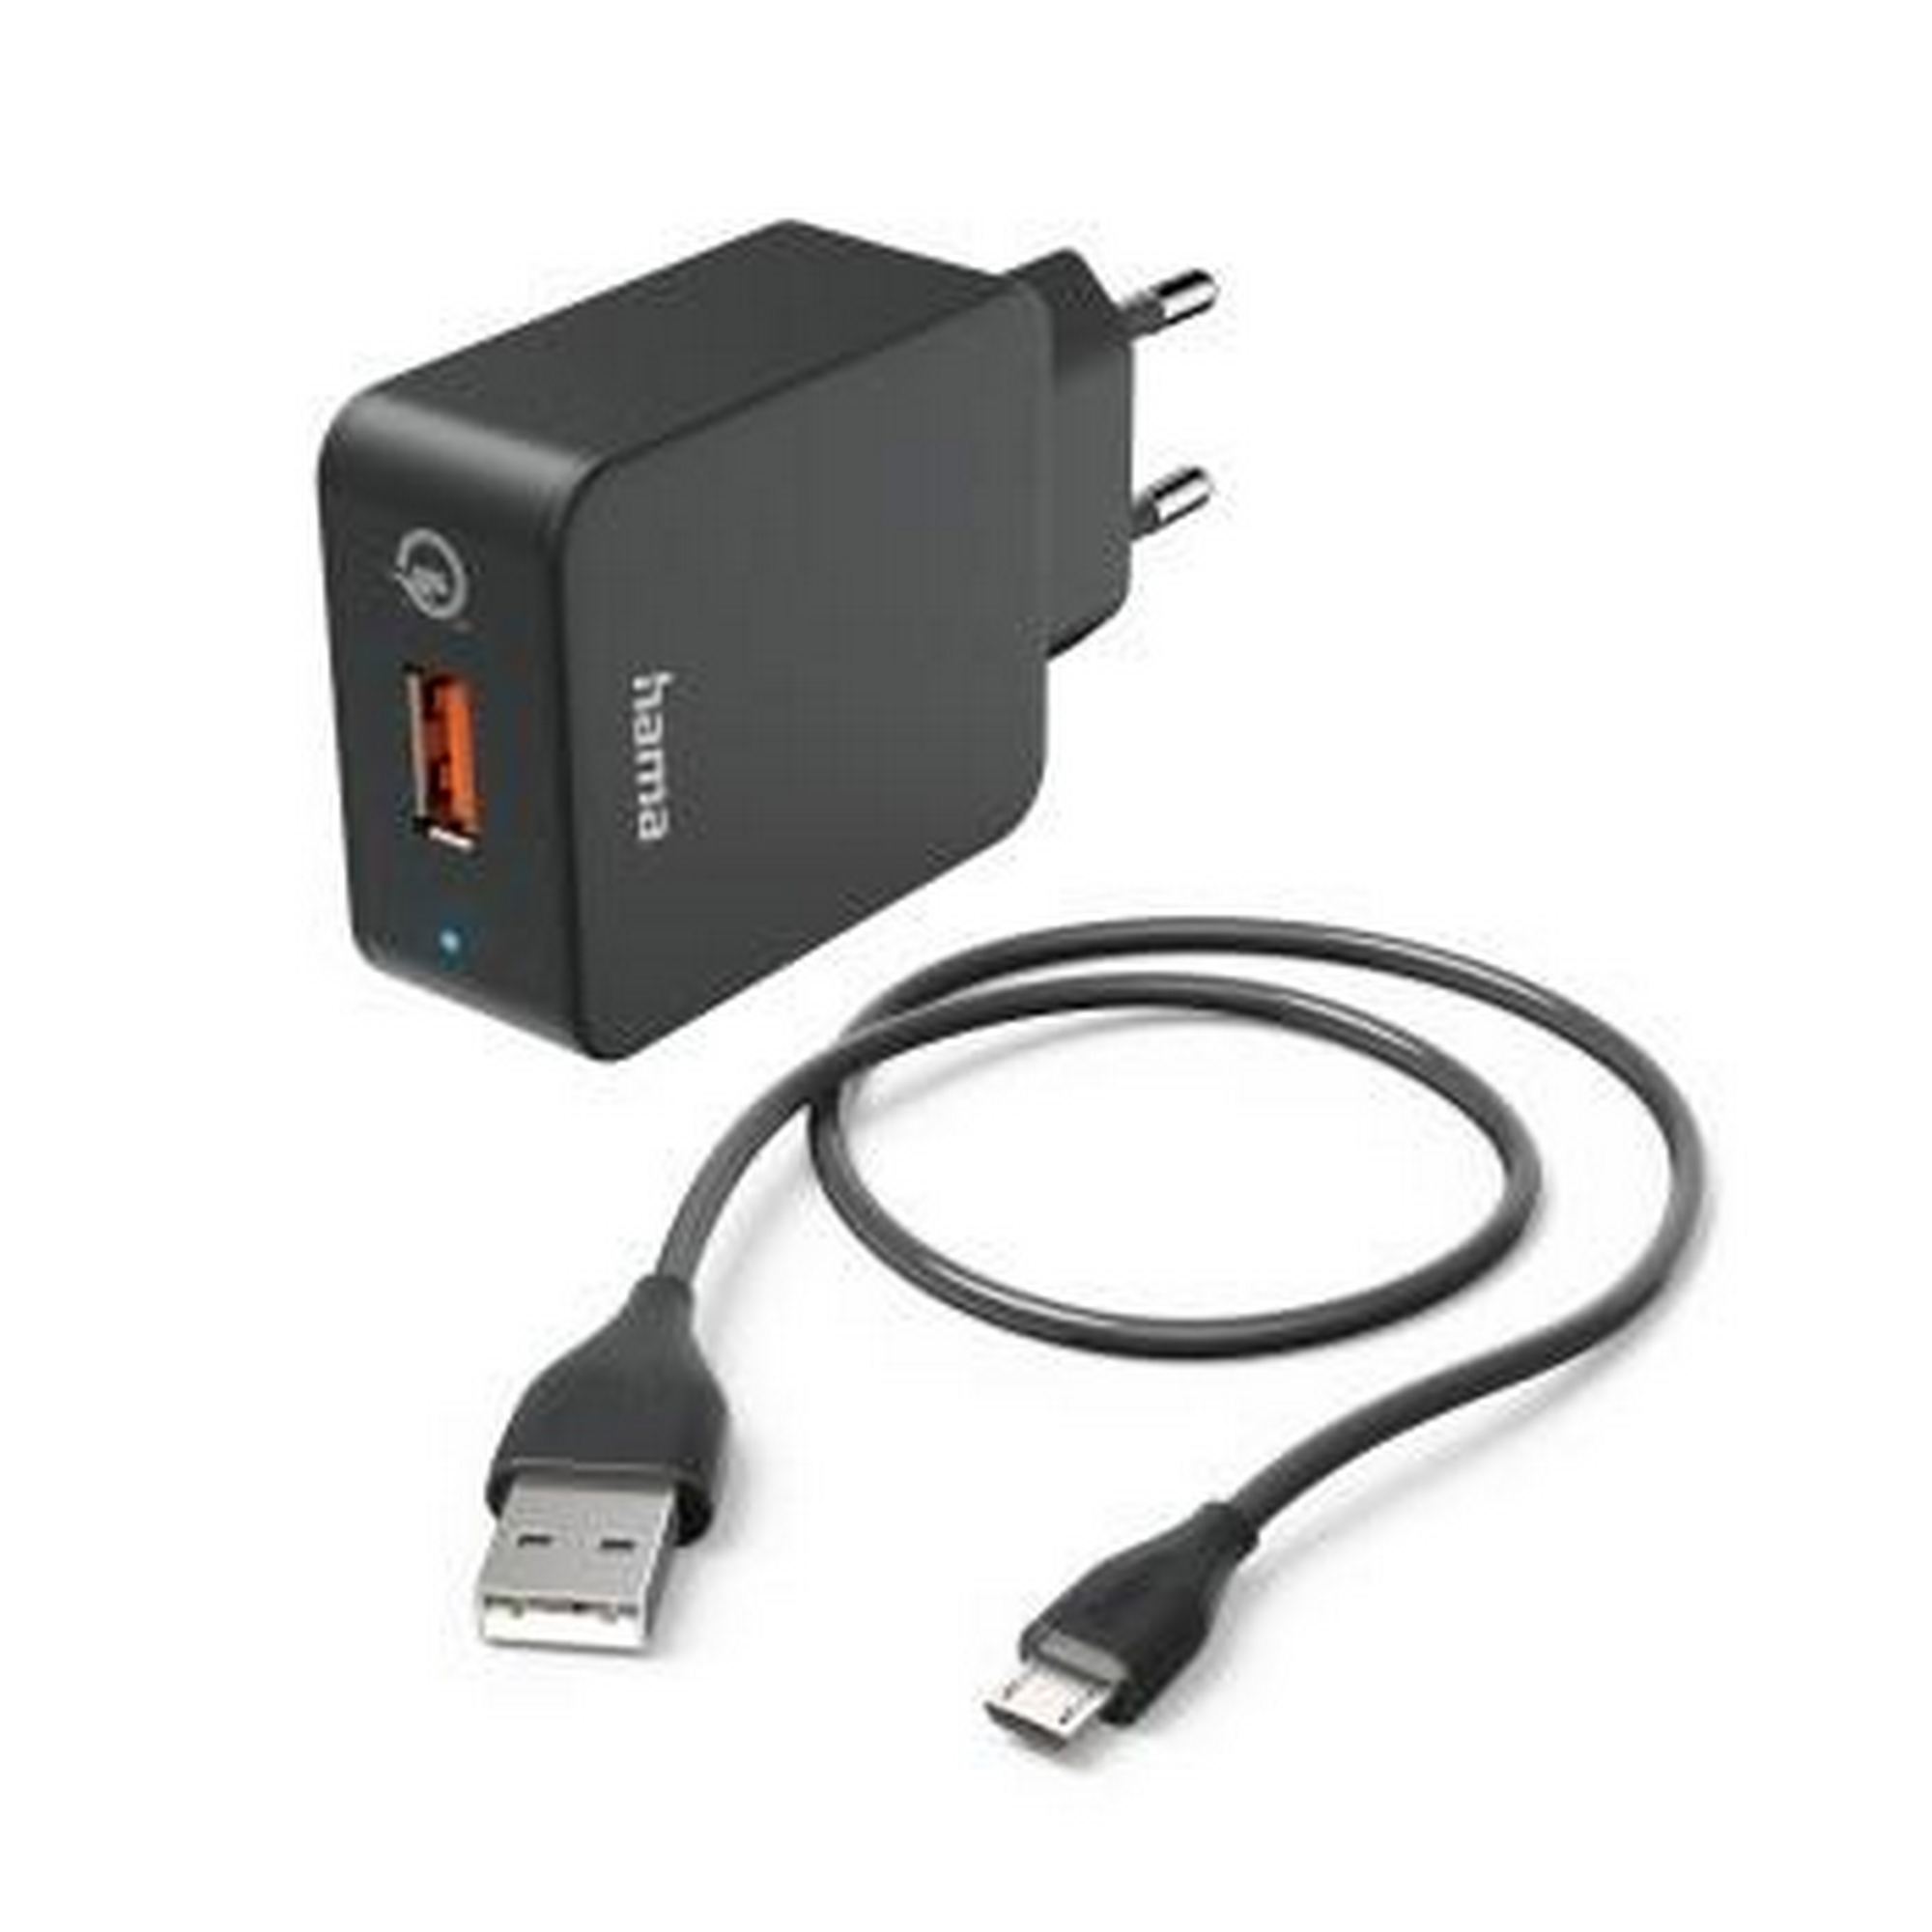 Schnellladegerät schwarz mit Ladekabel Micro-USB Qualcomm 19,5 W + product picture